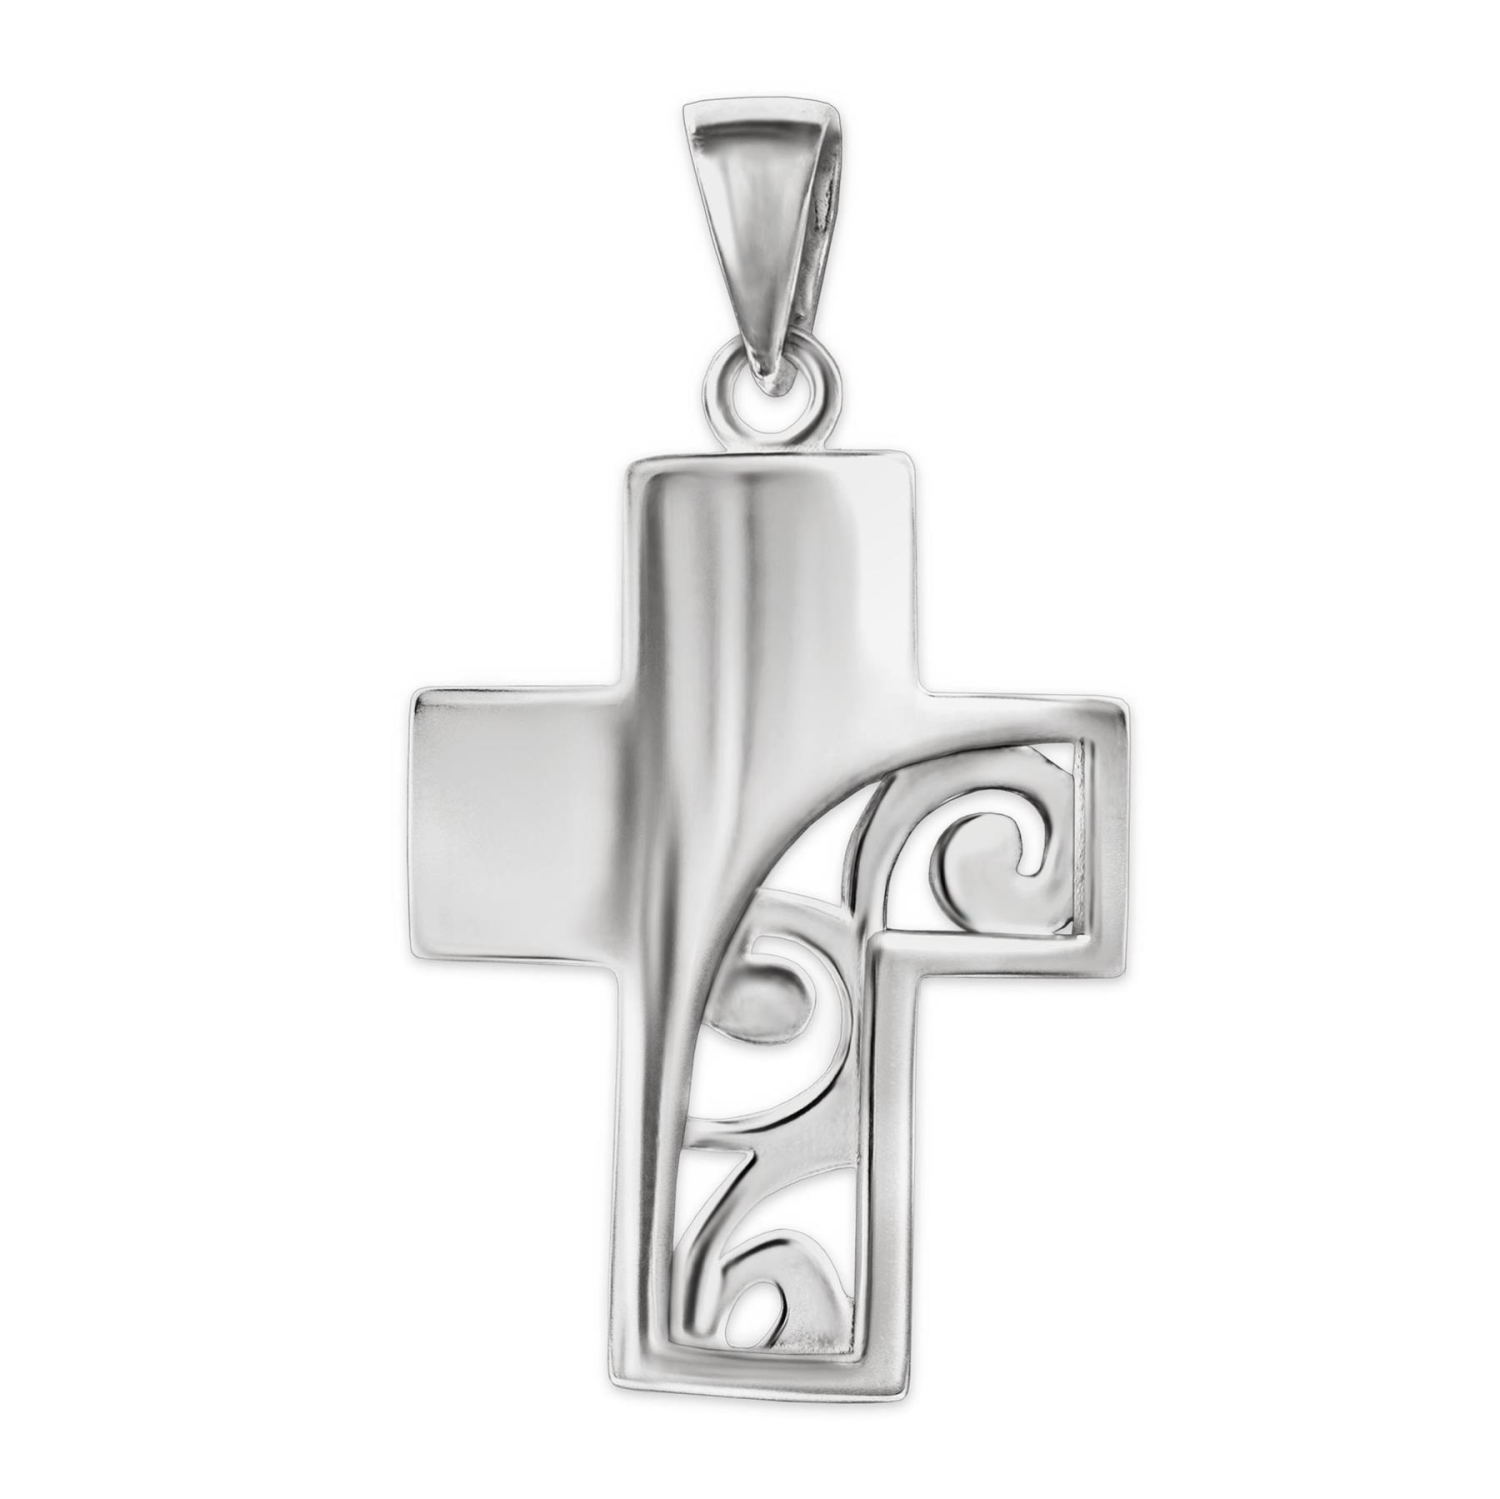 Silberner Damen Anhänger breites Kreuz 19 mm gewölbt glänzend  rechts teils offen elegant verschnörkelt STERLING SILBER 925